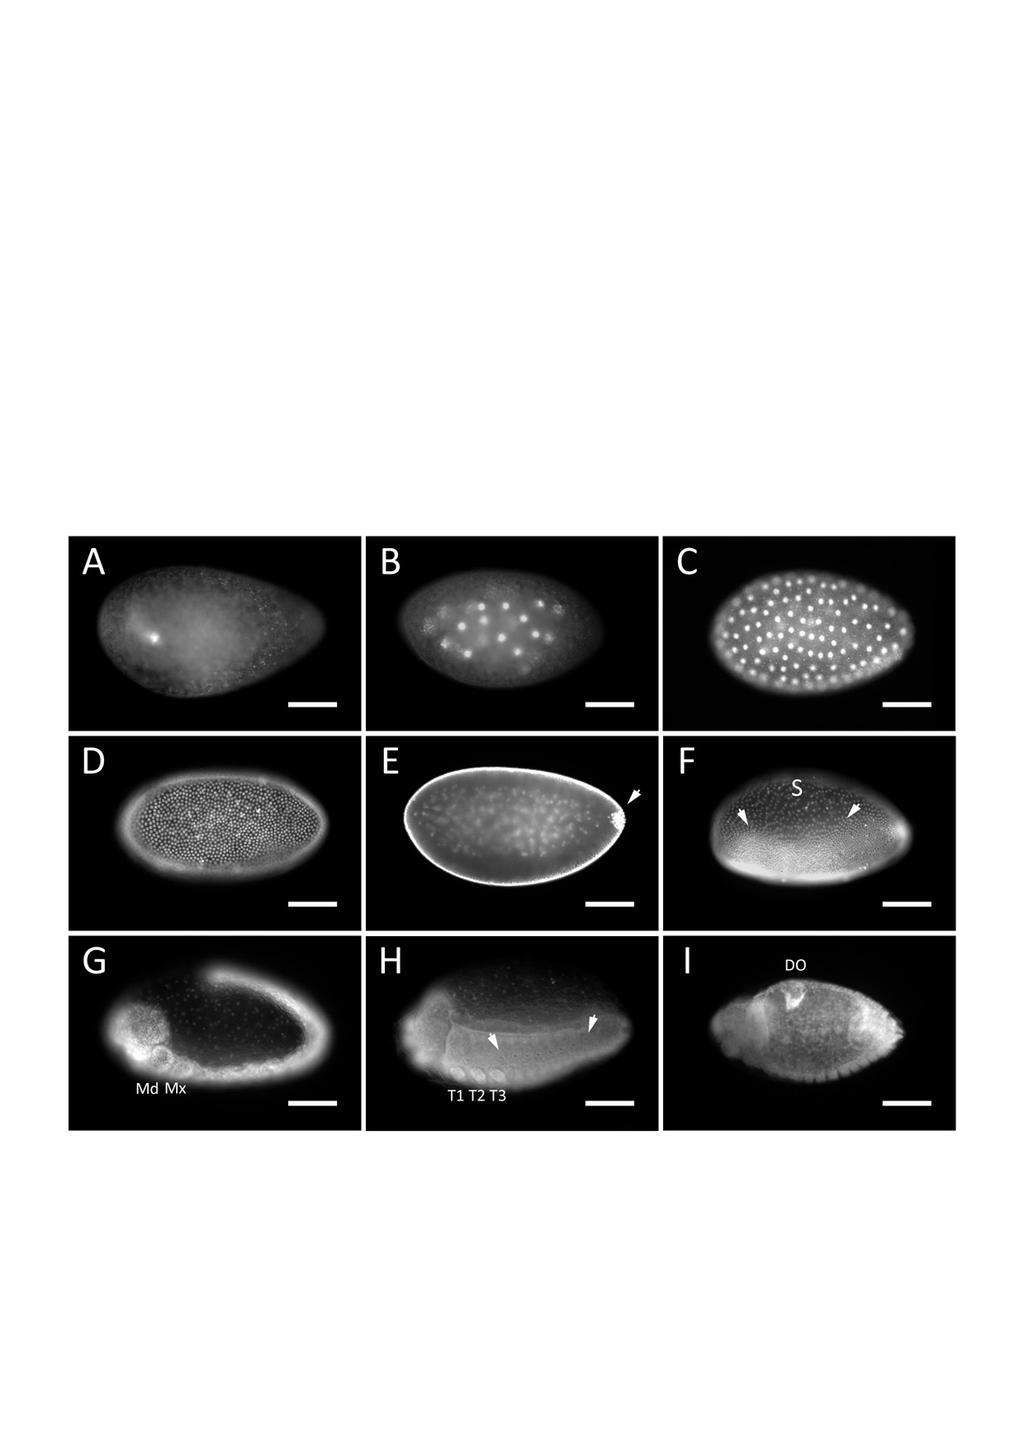 I. Kapitel: Bruchidius hunchback - Ergebnisse es bleiben weniger Zellen, dort entwickelt sich die Serosa, eine extraembryonale Membran (Abb. 6: F).